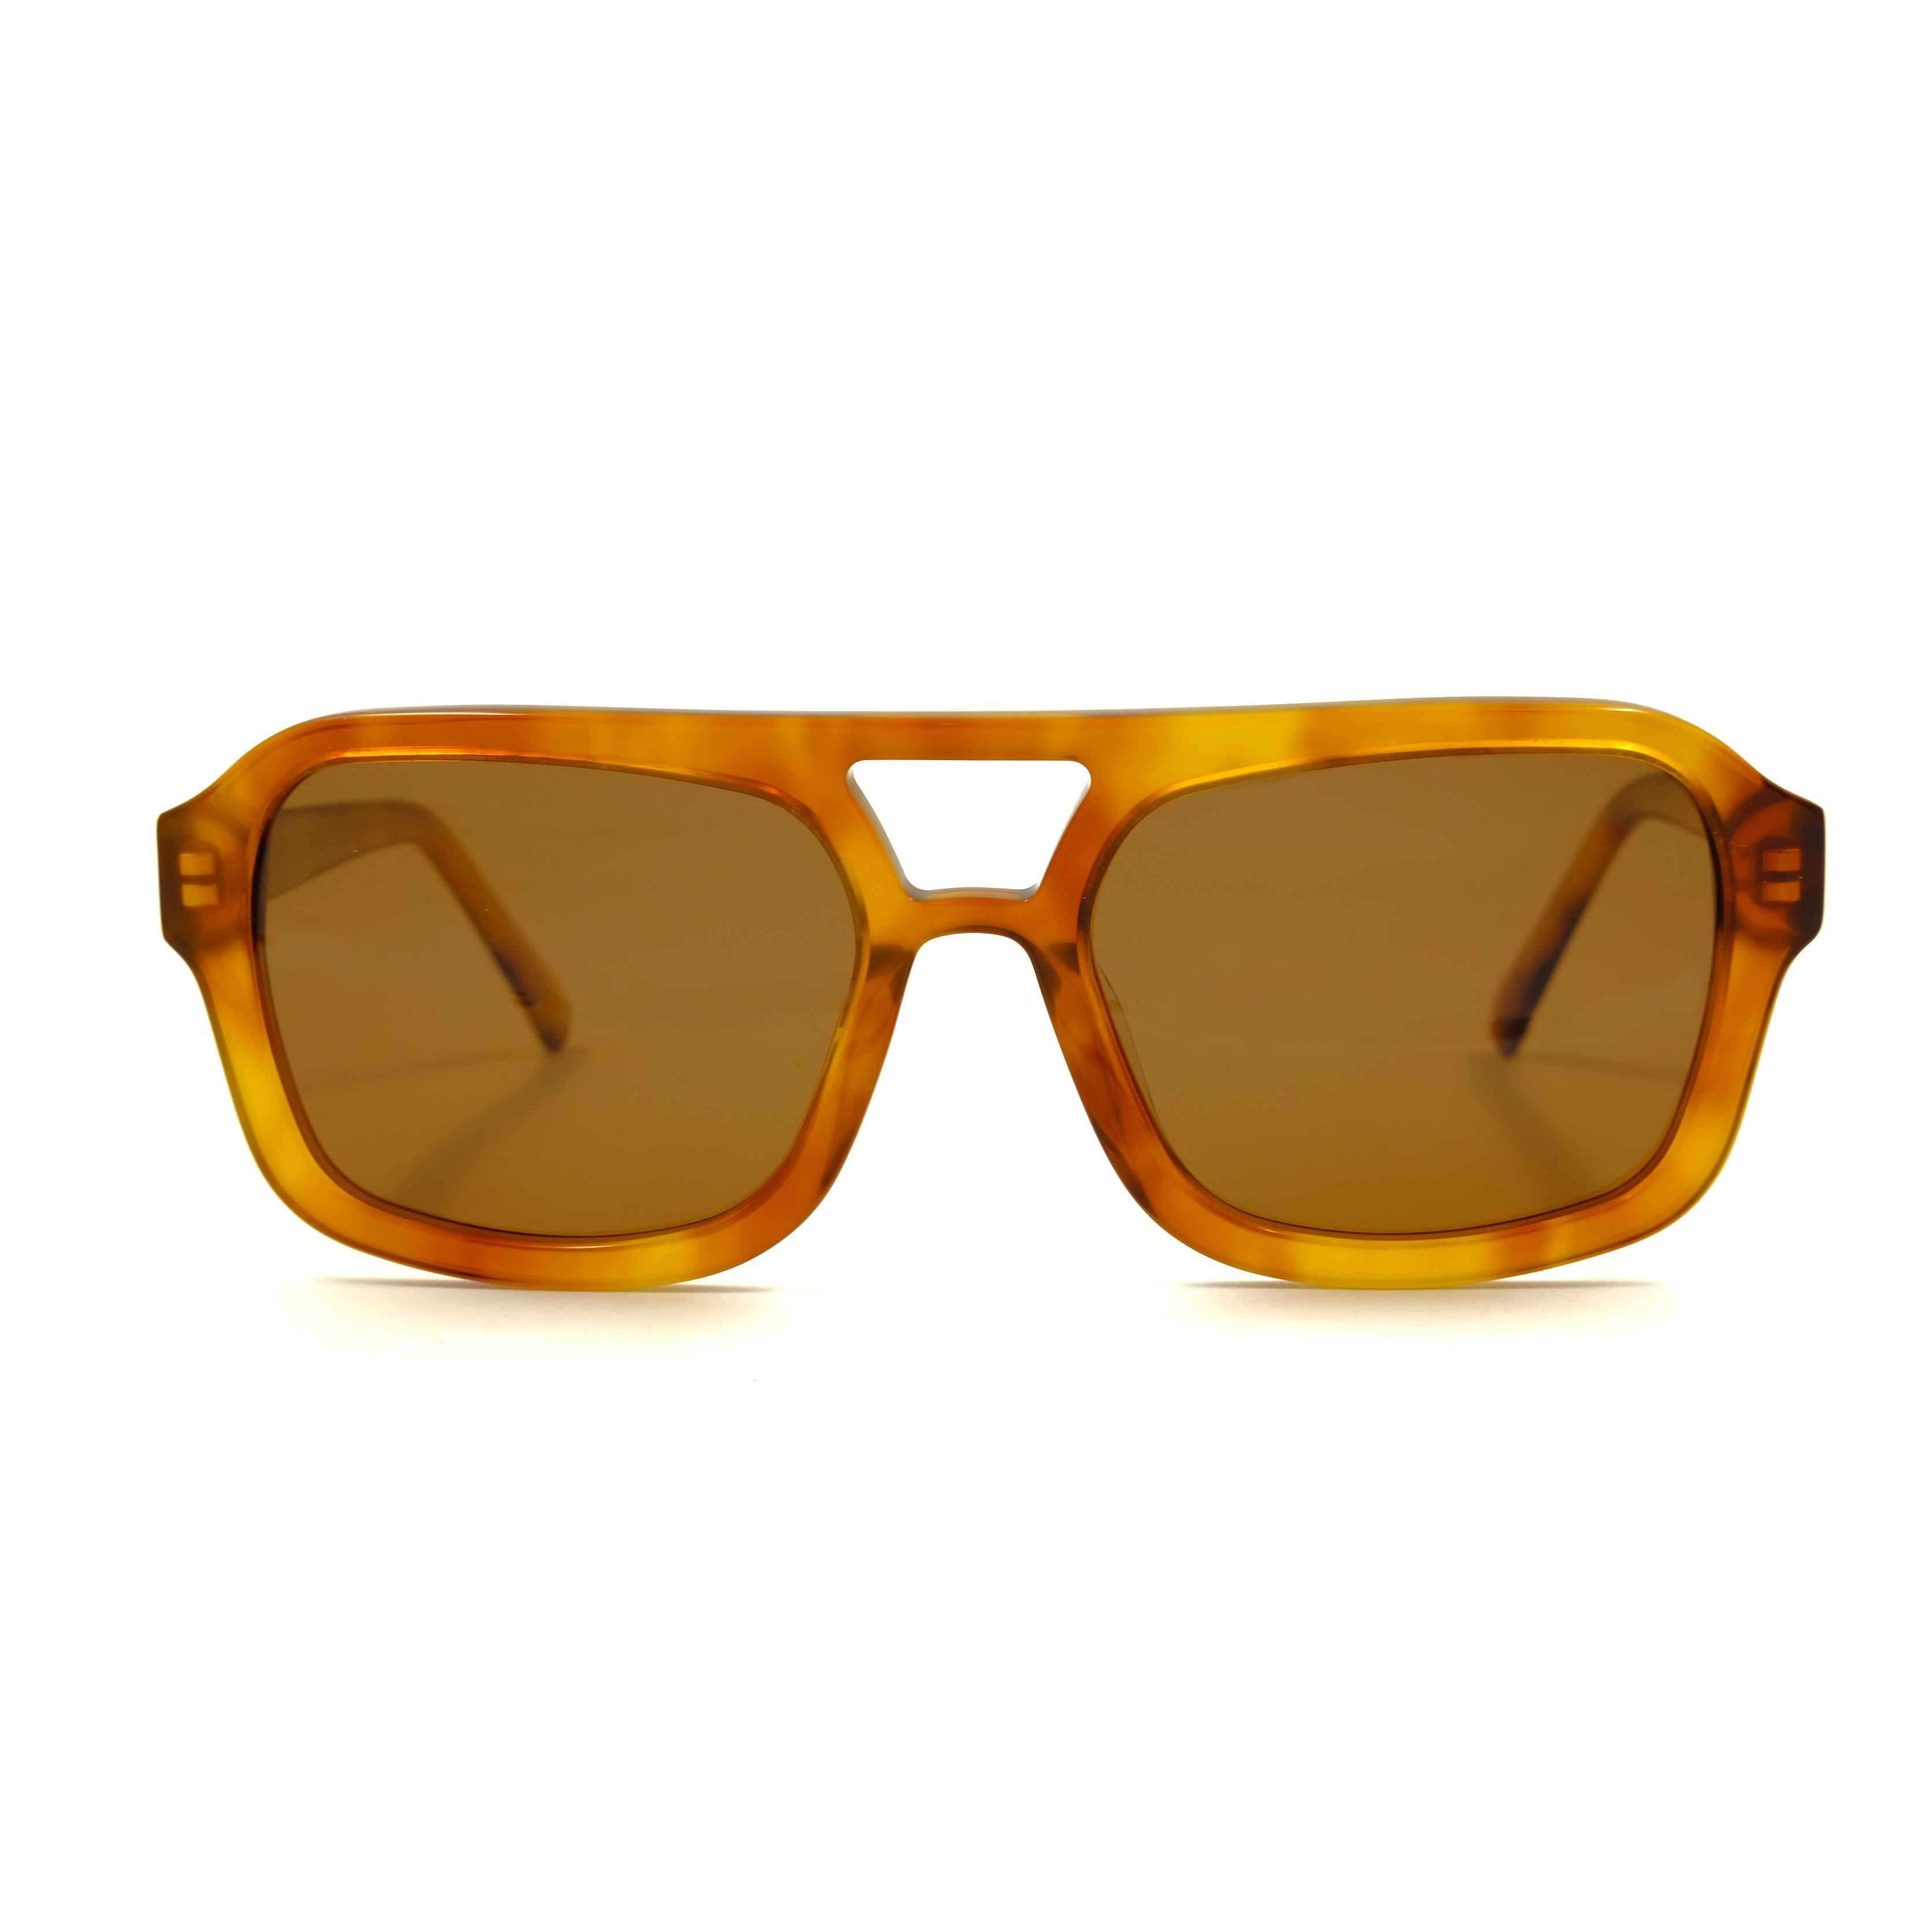 Tortoise Square Acetate Sunglasses Men Women Sunglasses Manufacturer Custom Fashion Sunglasses